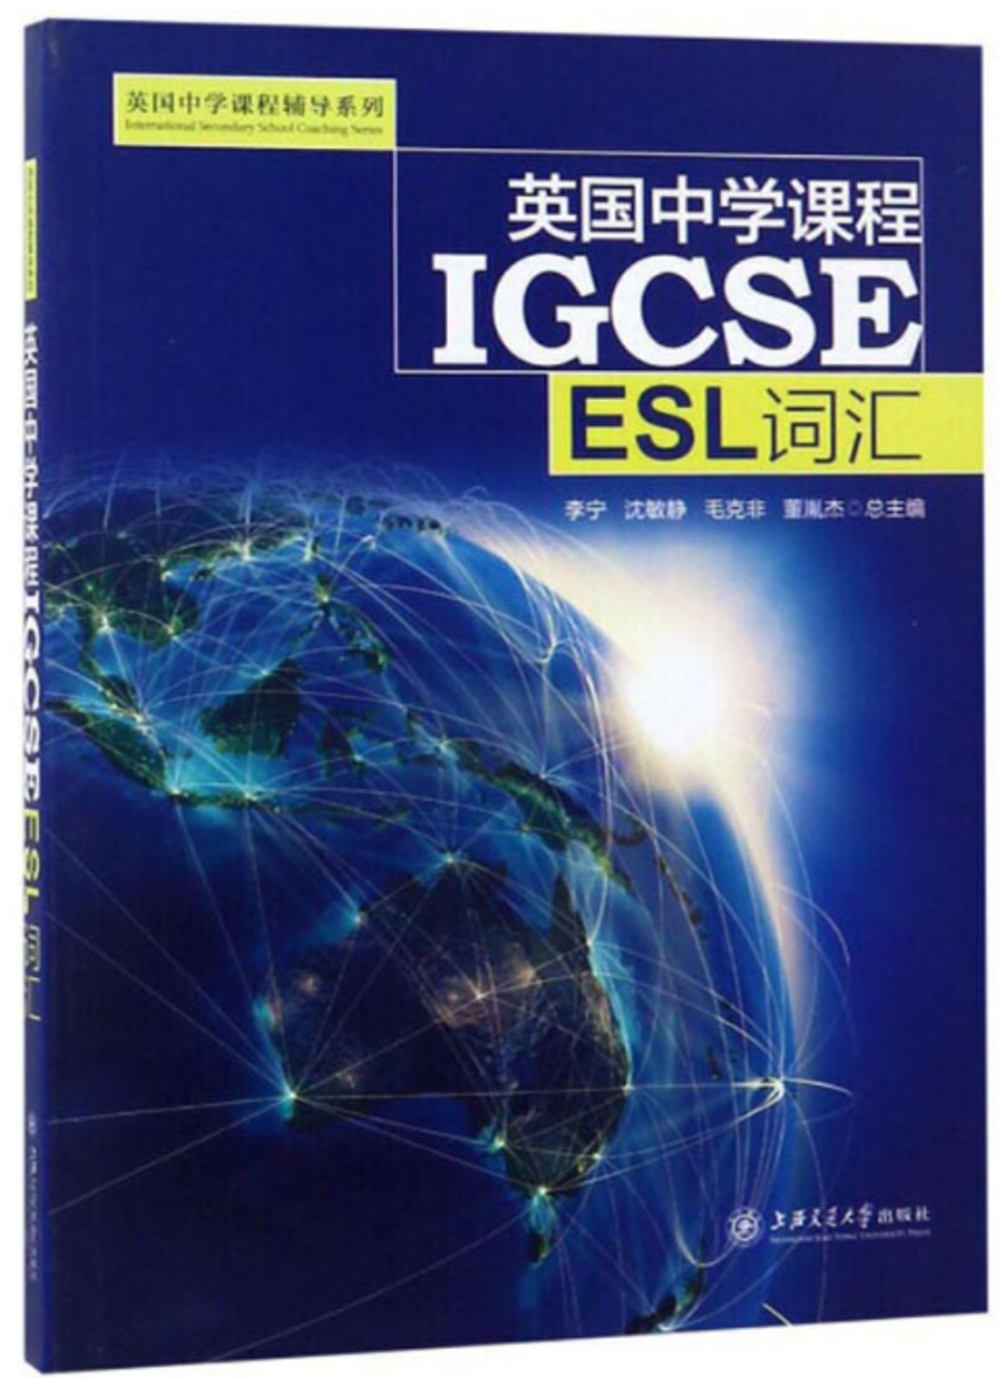 英國中學課程IGCSE：ESL詞彙（修訂版）